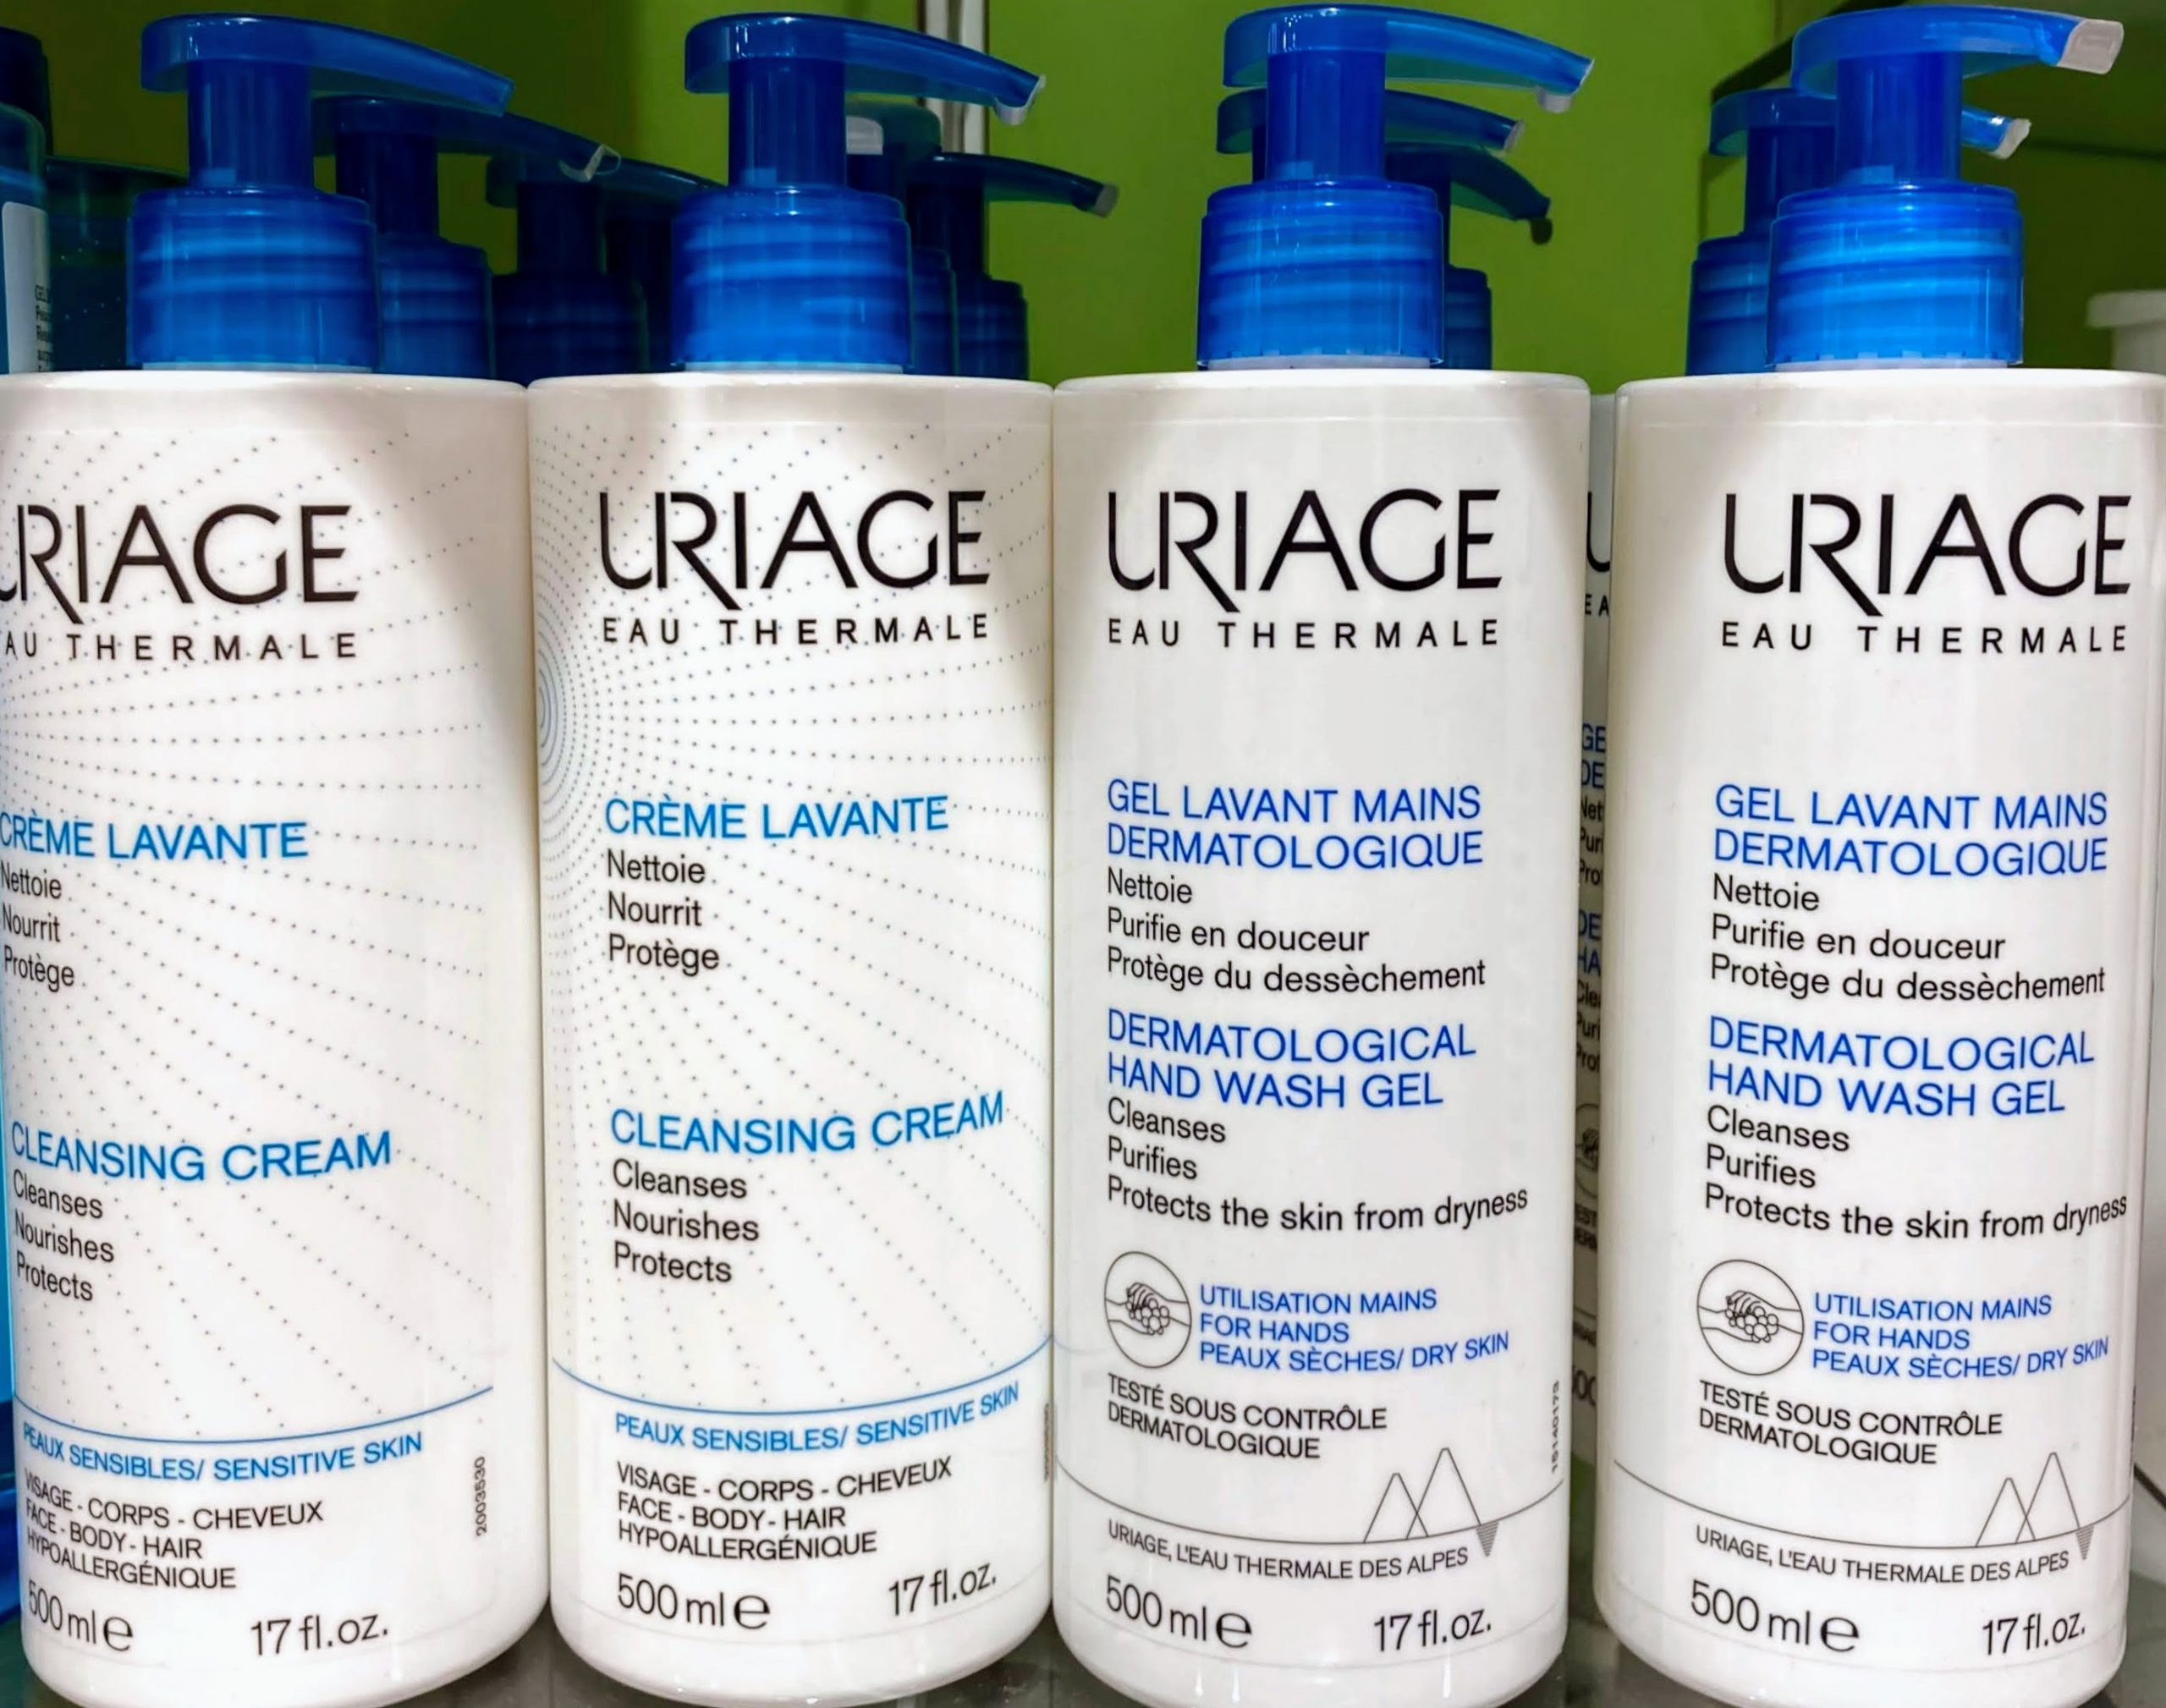 Comprar Uriage crème lavante 1000ml en Gran Farmacia Andorra Online